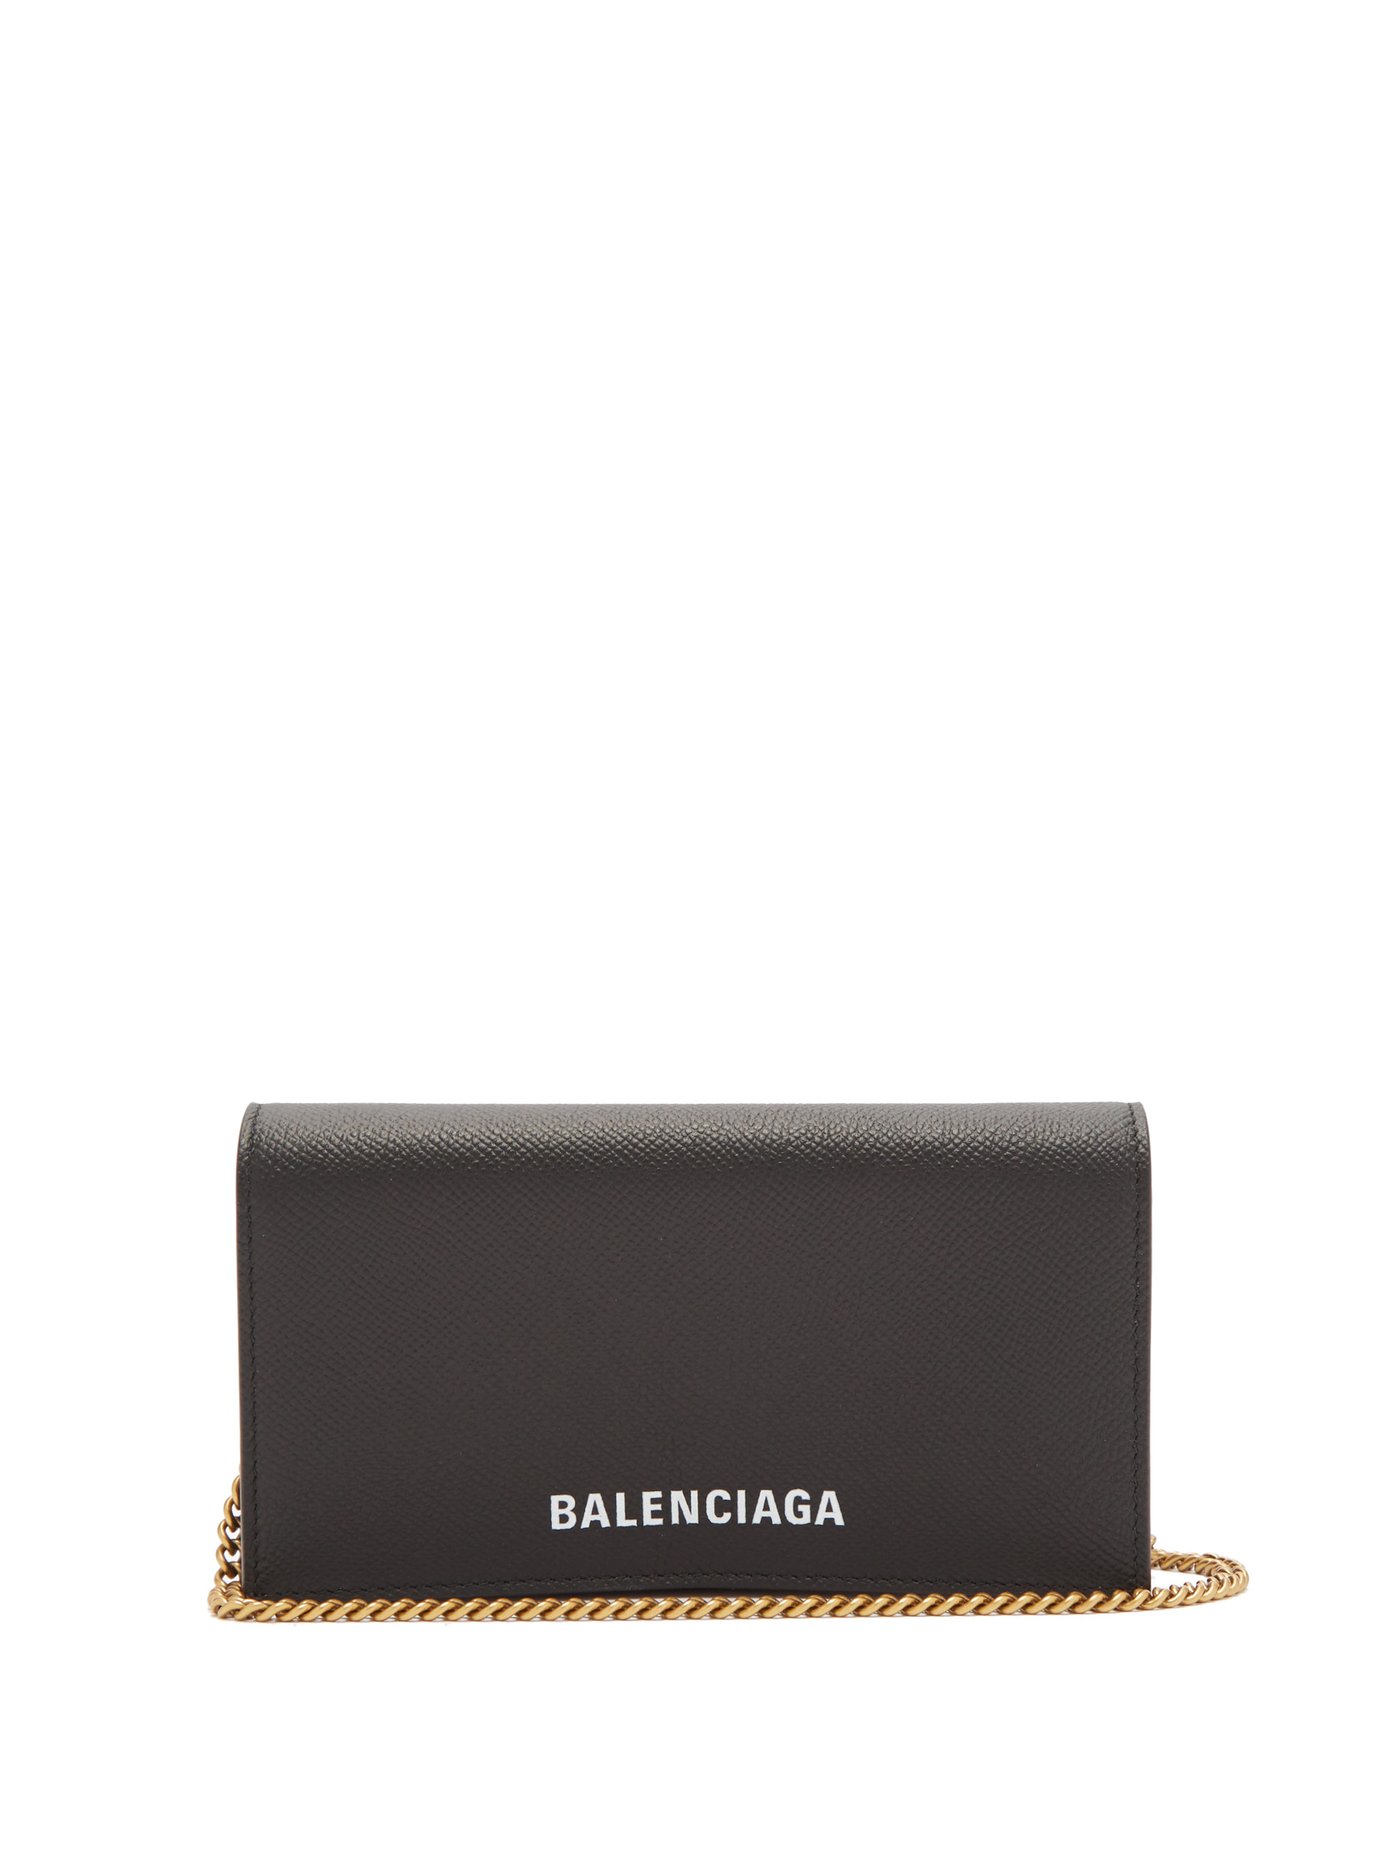 balenciaga wallet on a chain